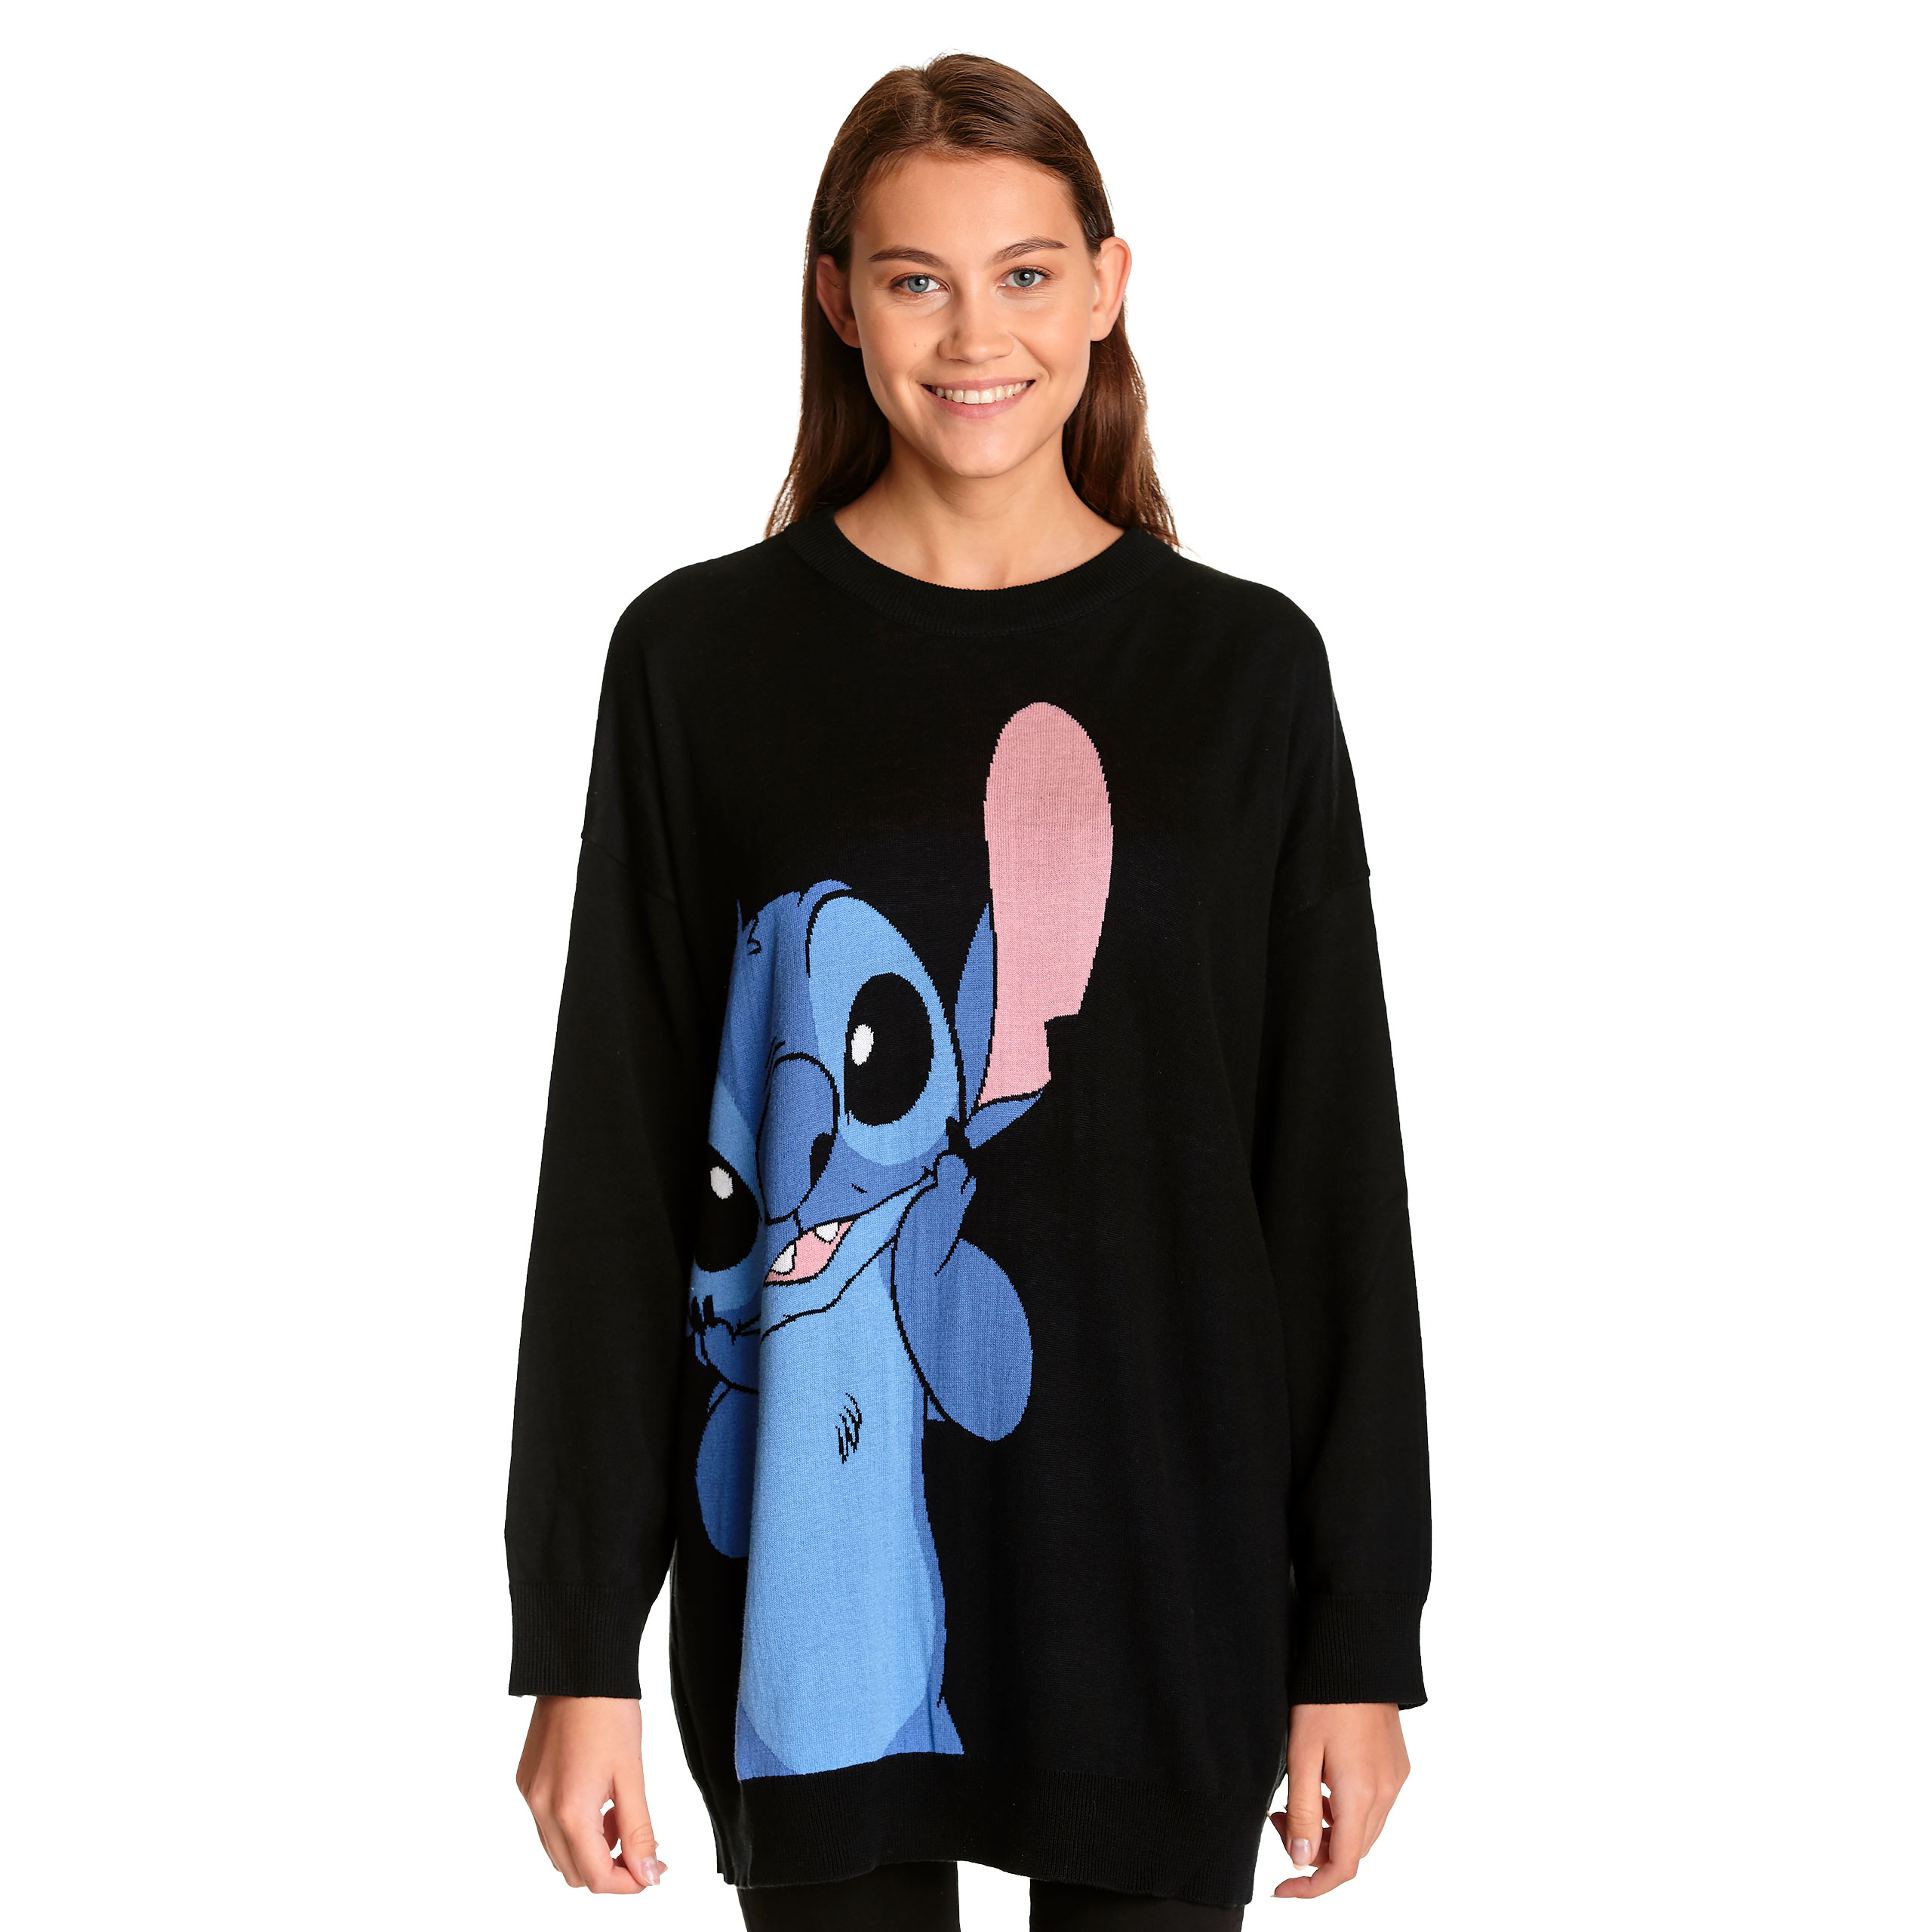 Lilo & Stitch - Oversize Sweater Damen schwarz